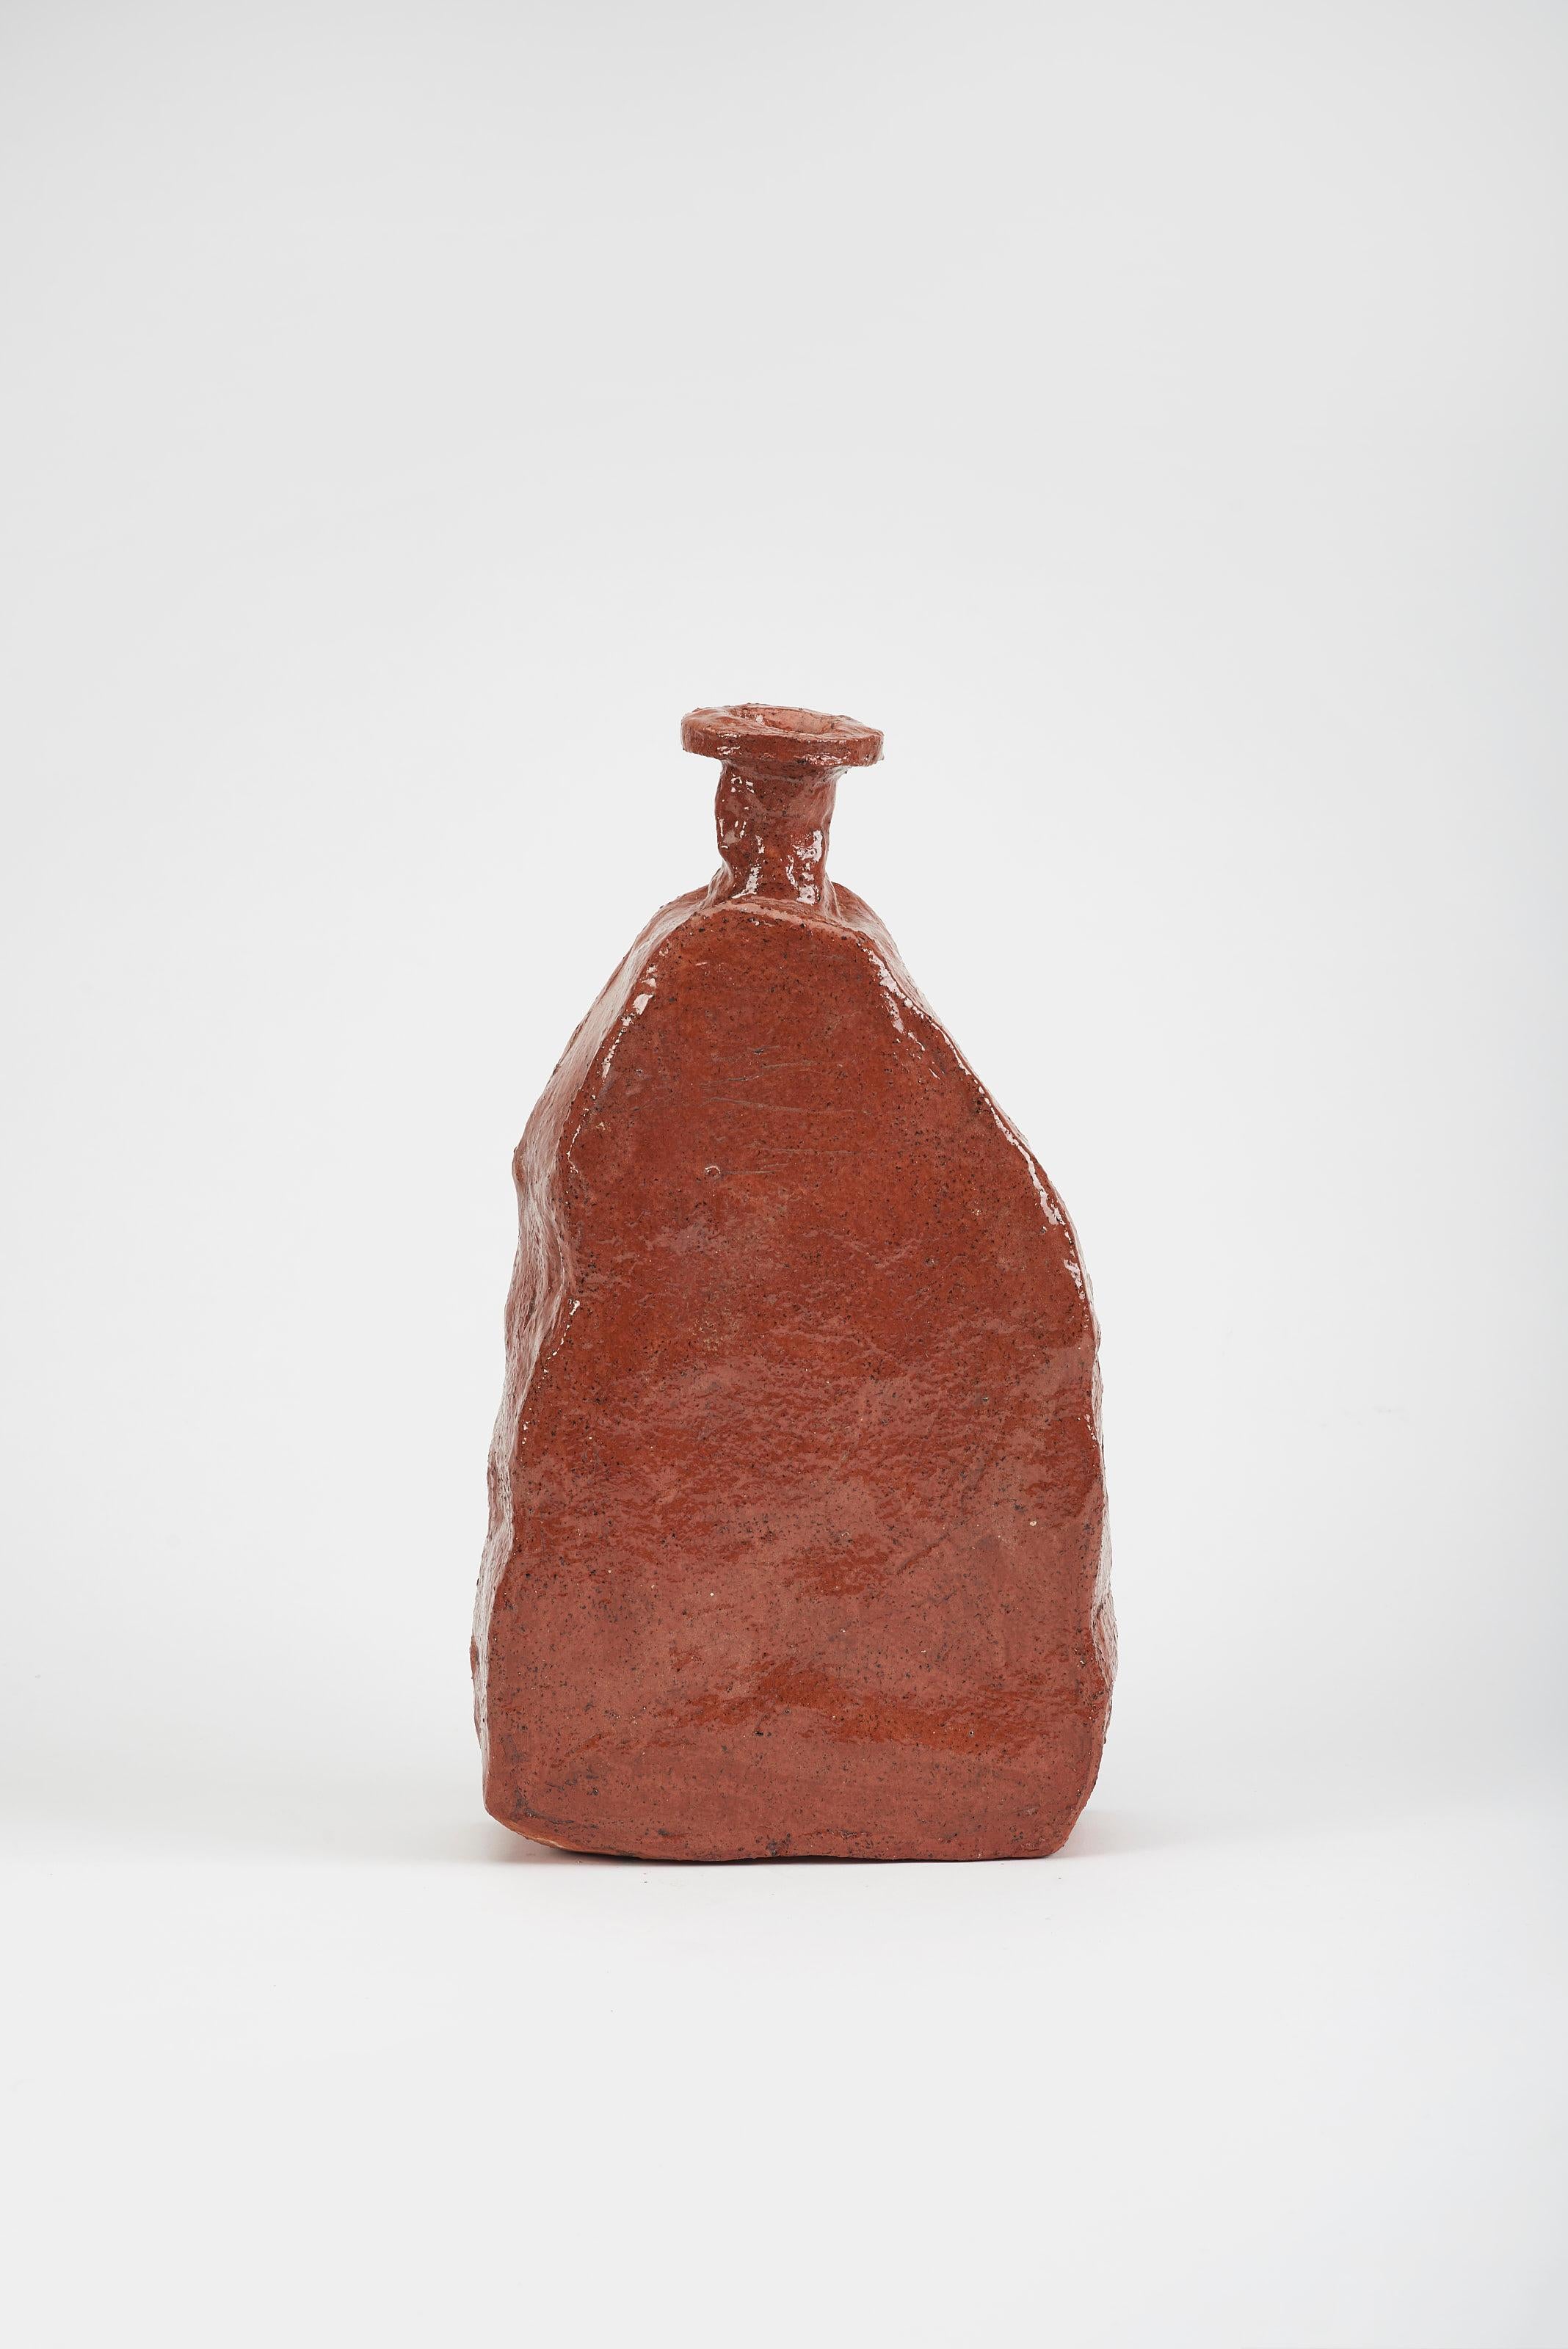 Aloi Medium-Vase von Willem Van Hooff
Abmessungen: B 35 x T 10 x H 35 cm (Die Maße können variieren, da es sich um handgefertigte Stücke handelt, die leichte Größenabweichungen aufweisen können)
MATERIAL: Glasierte Keramik

Der Kern besteht aus